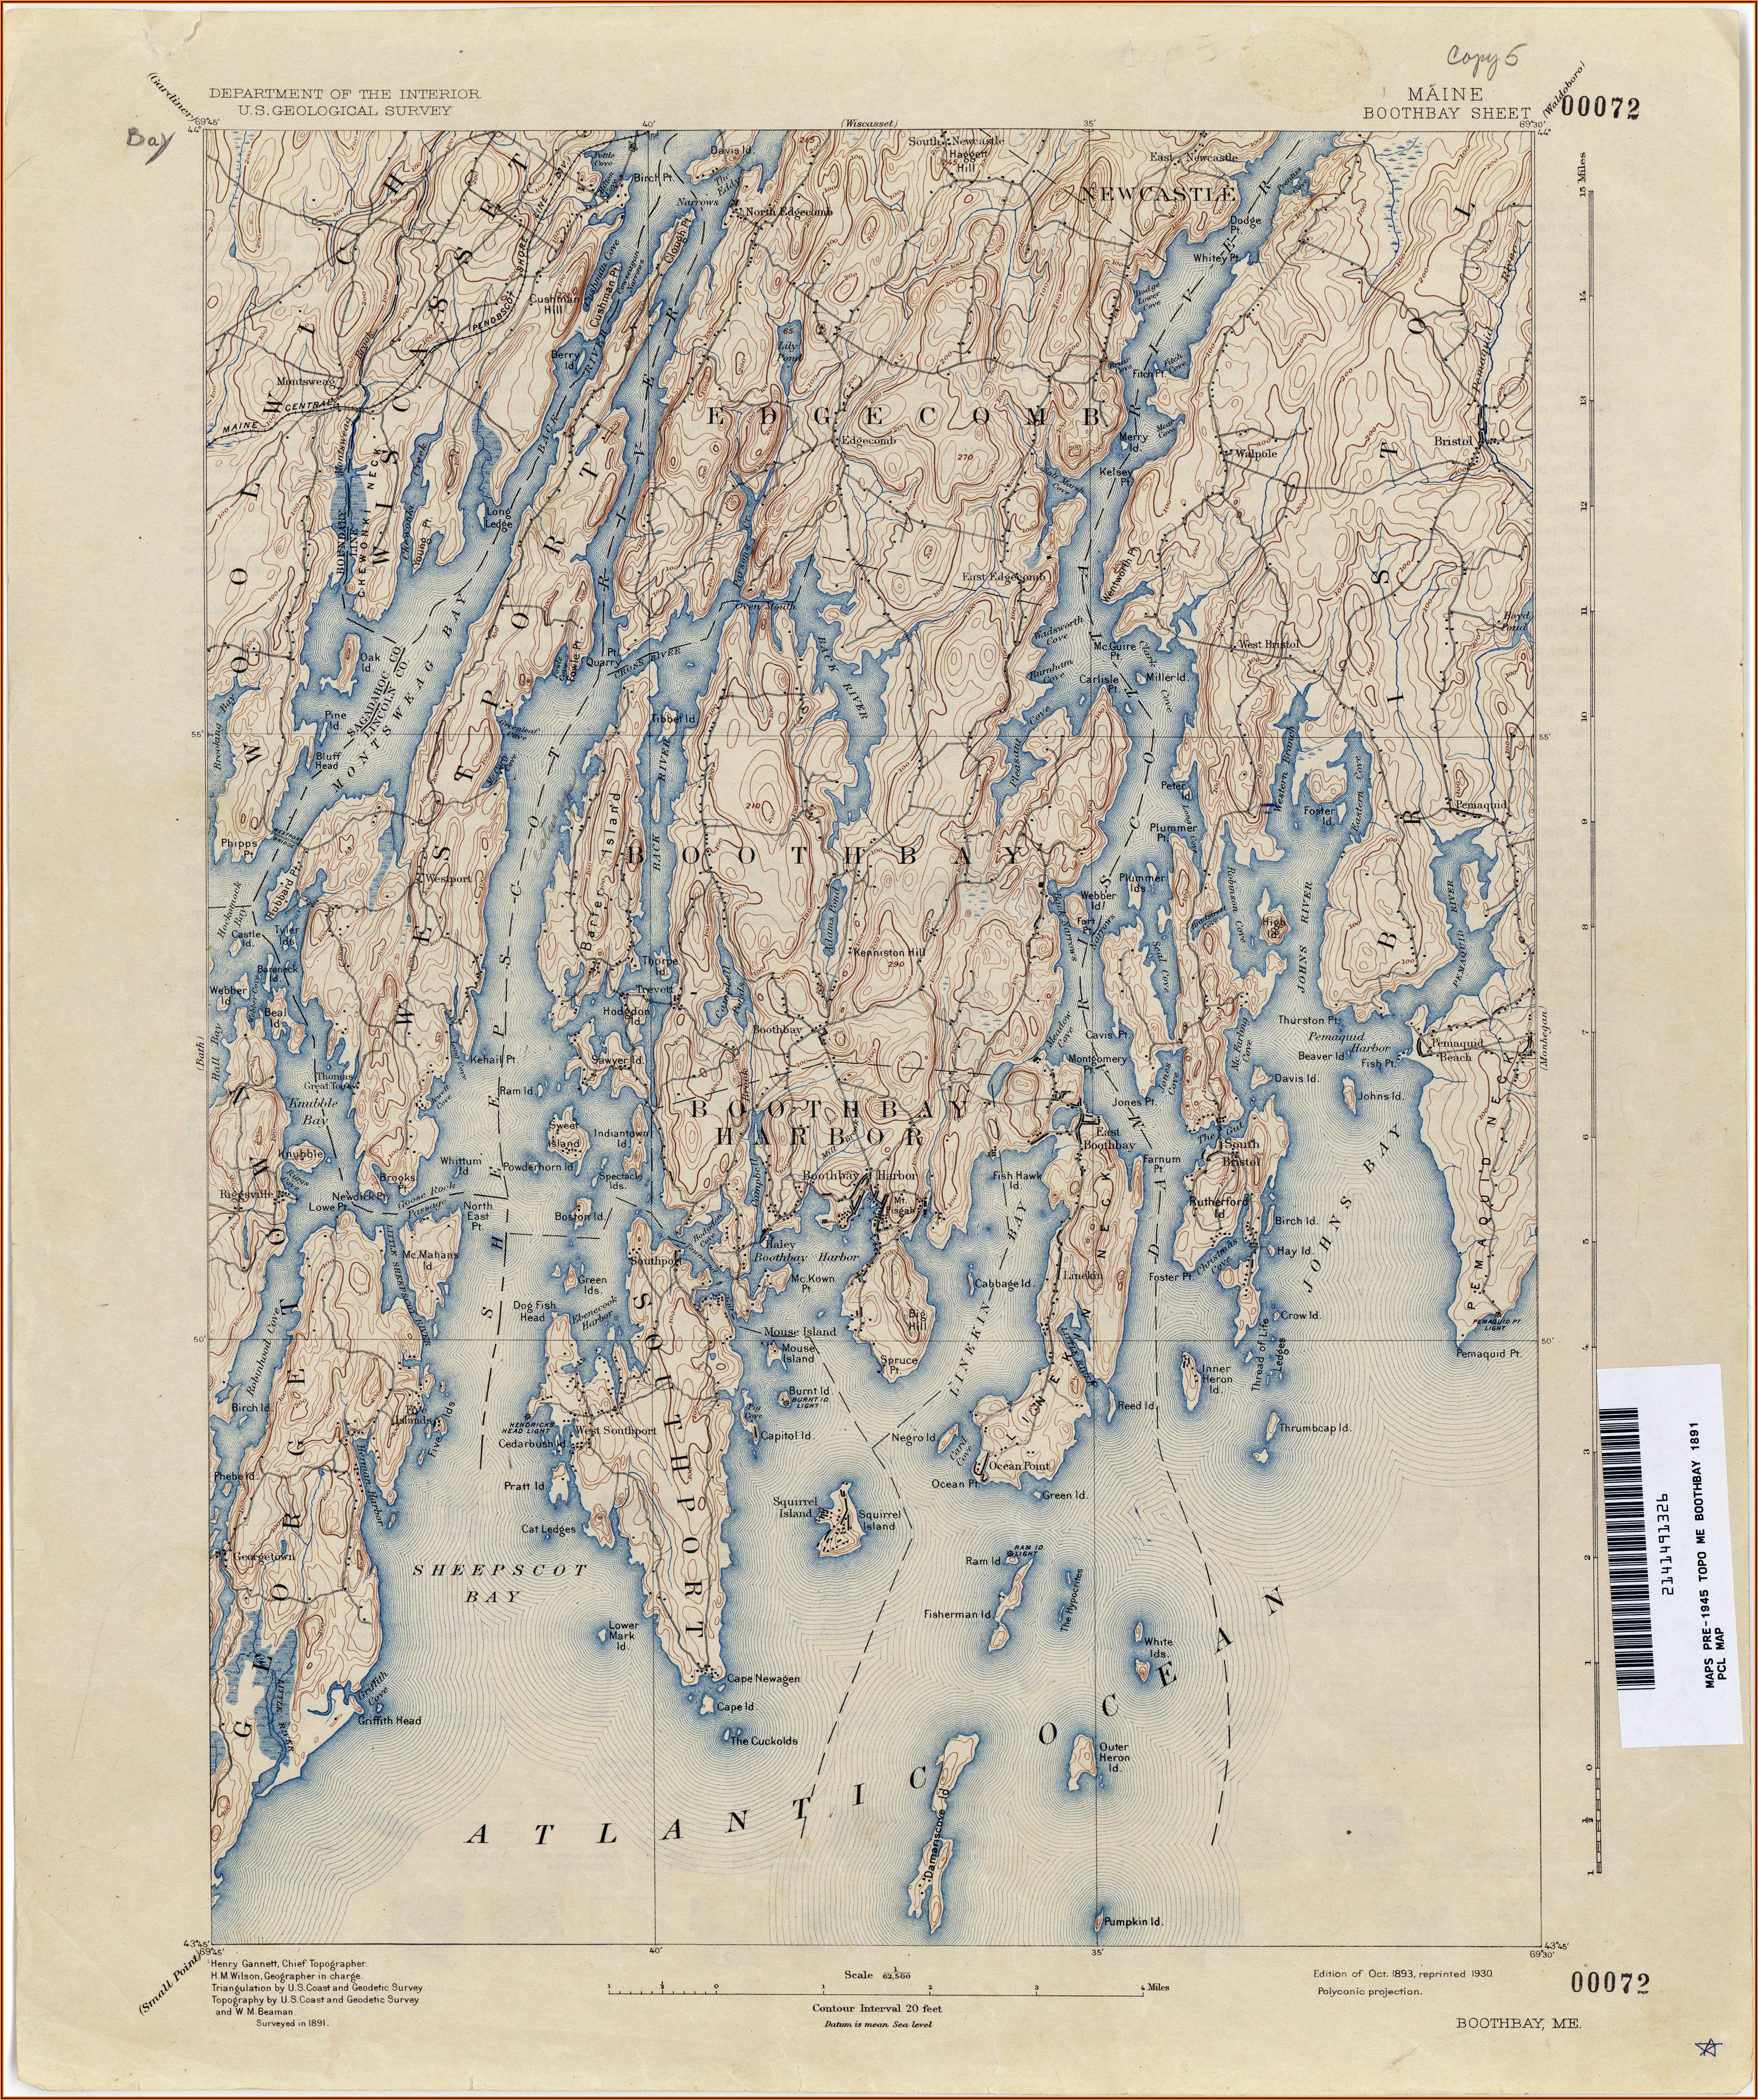 Maine Topographic Maps